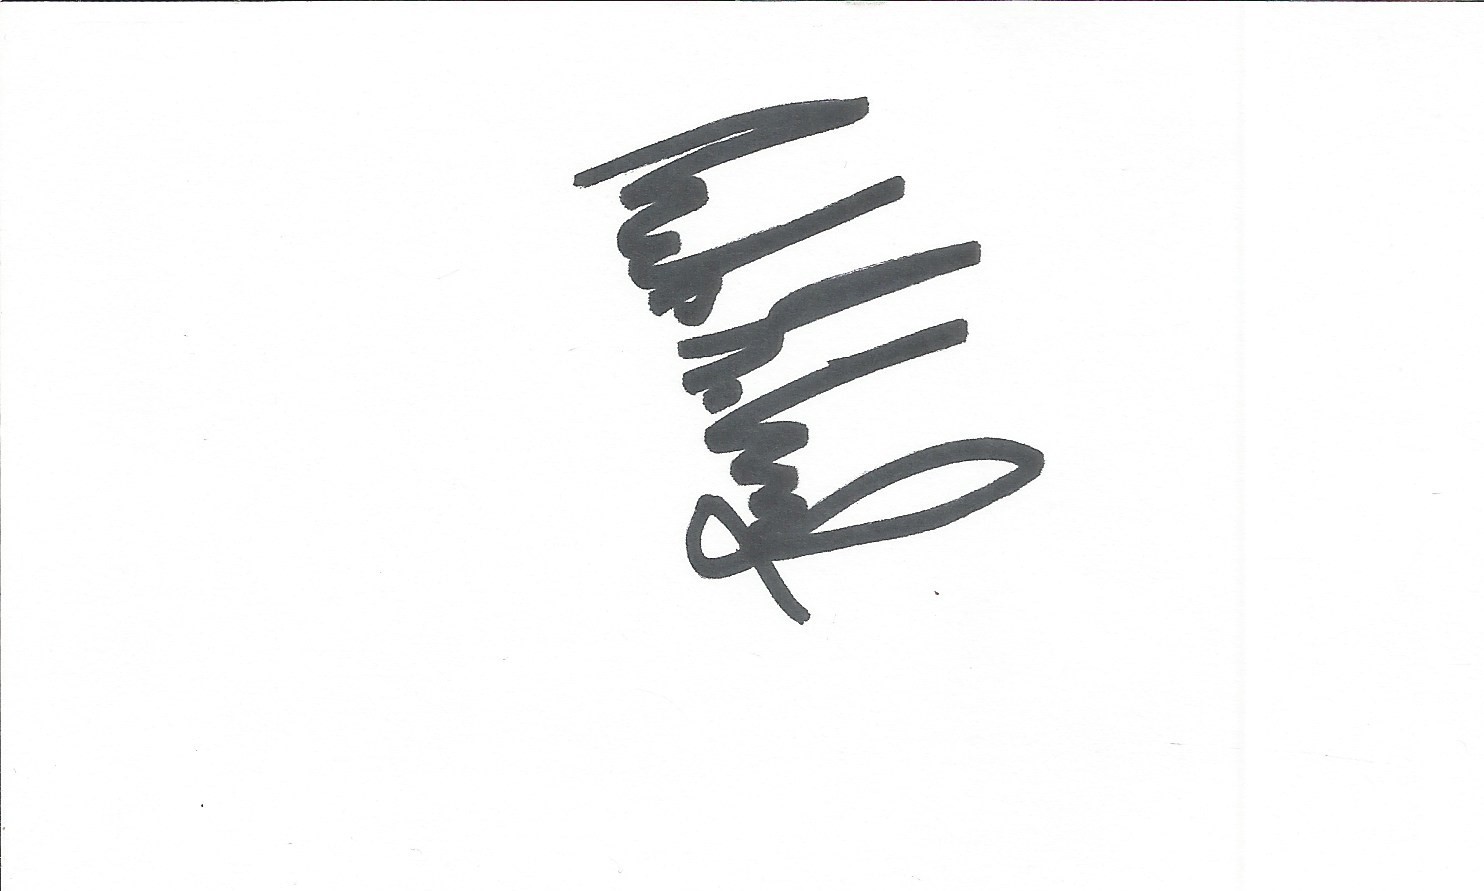 Actor Mads Mikkelsen Handsigned signature card. Signed in black marker pen. Originally a gymnast and